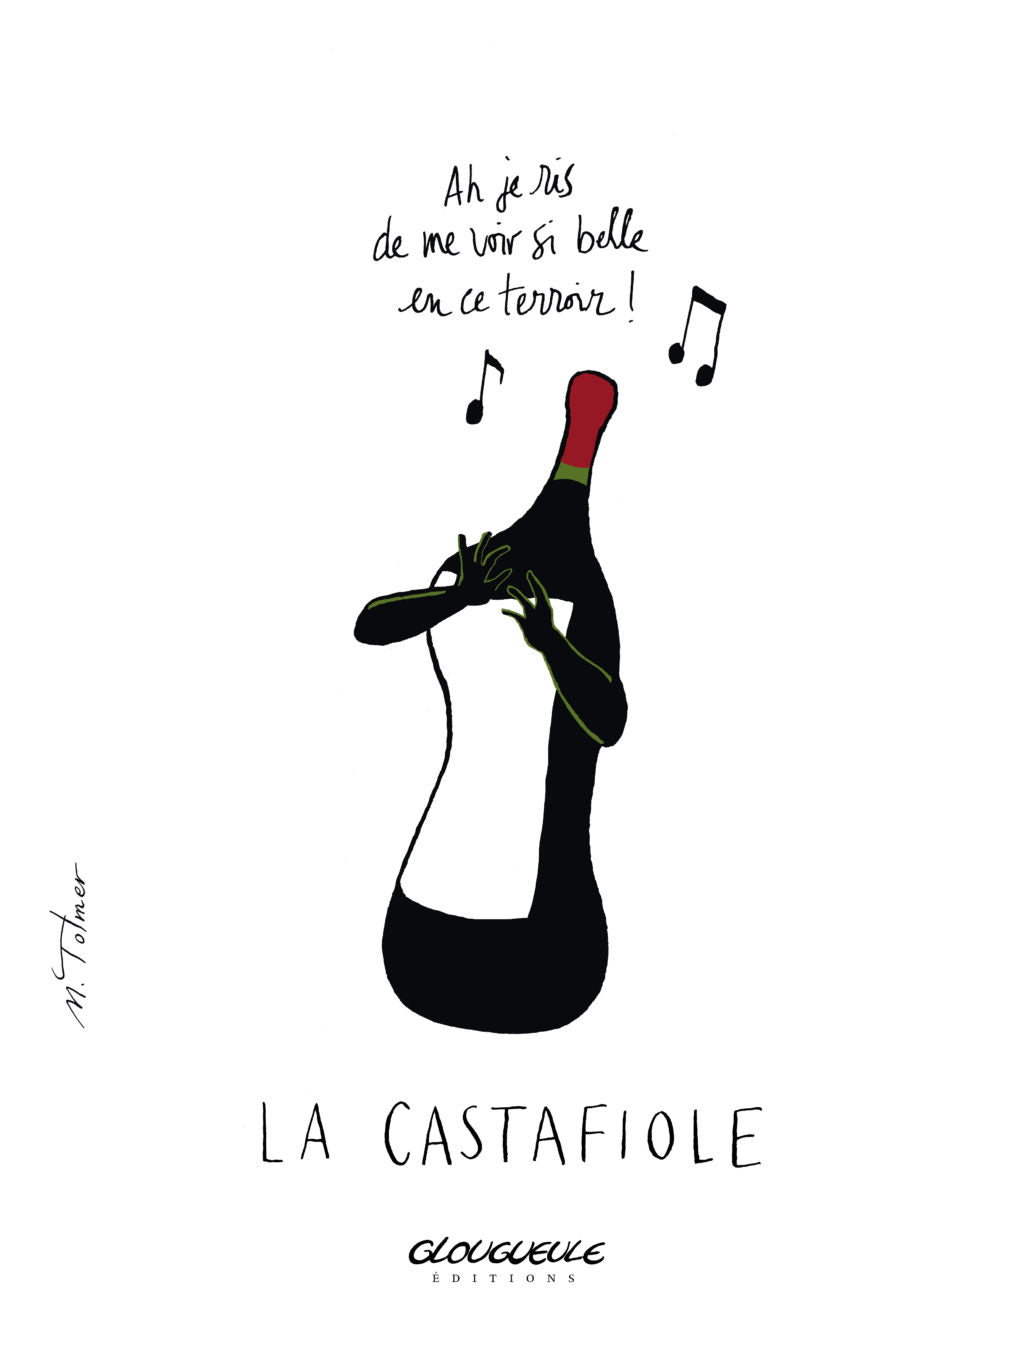 La Castafiole